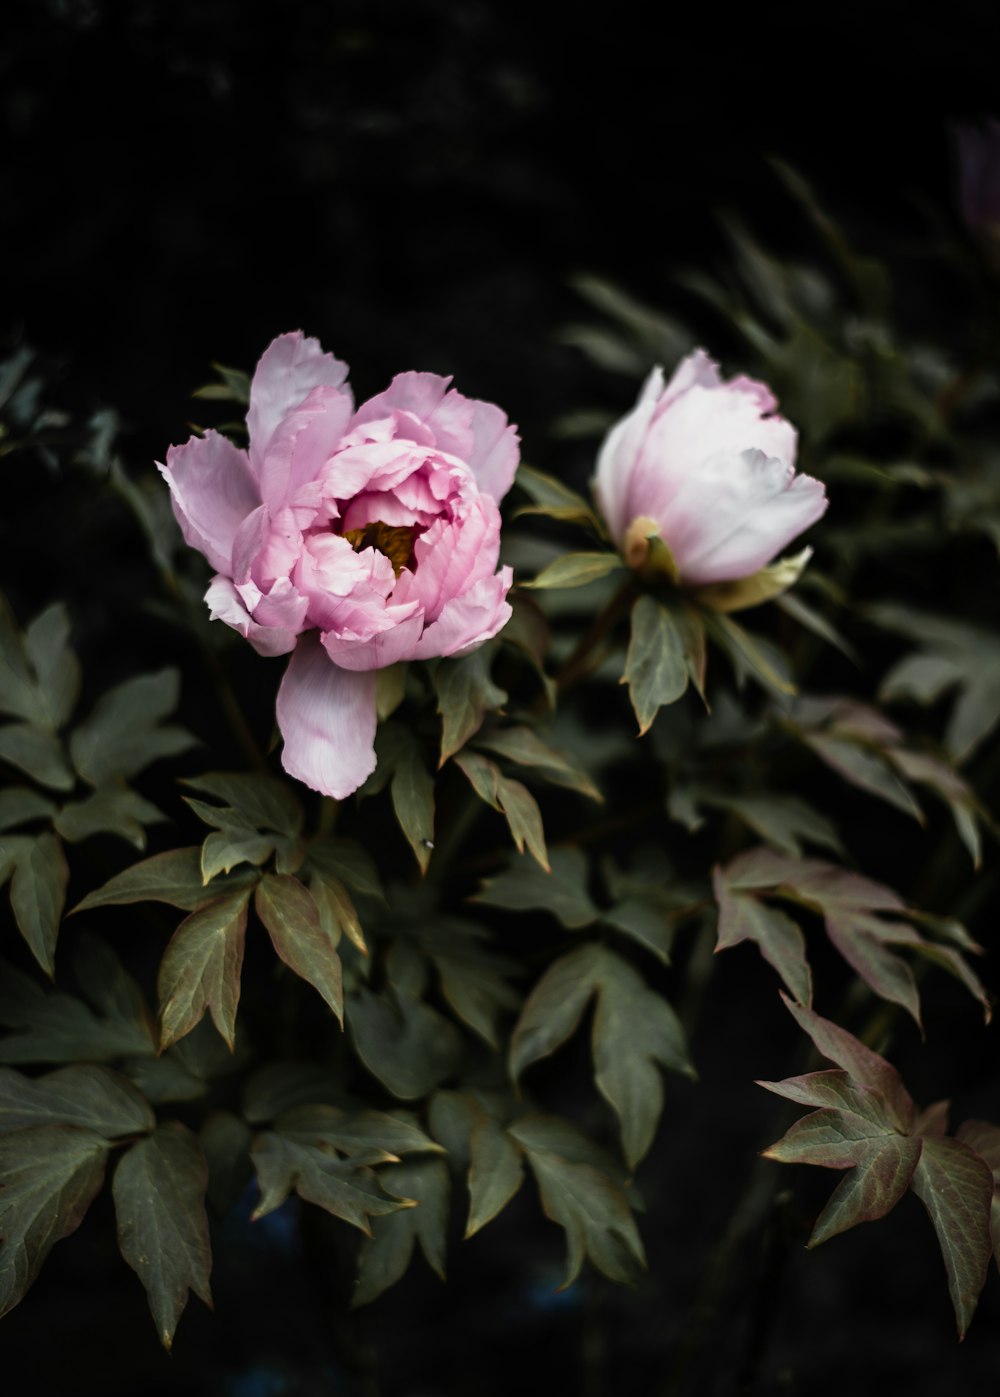 Photographie d’objectif à bascule décalée de fleurs roses